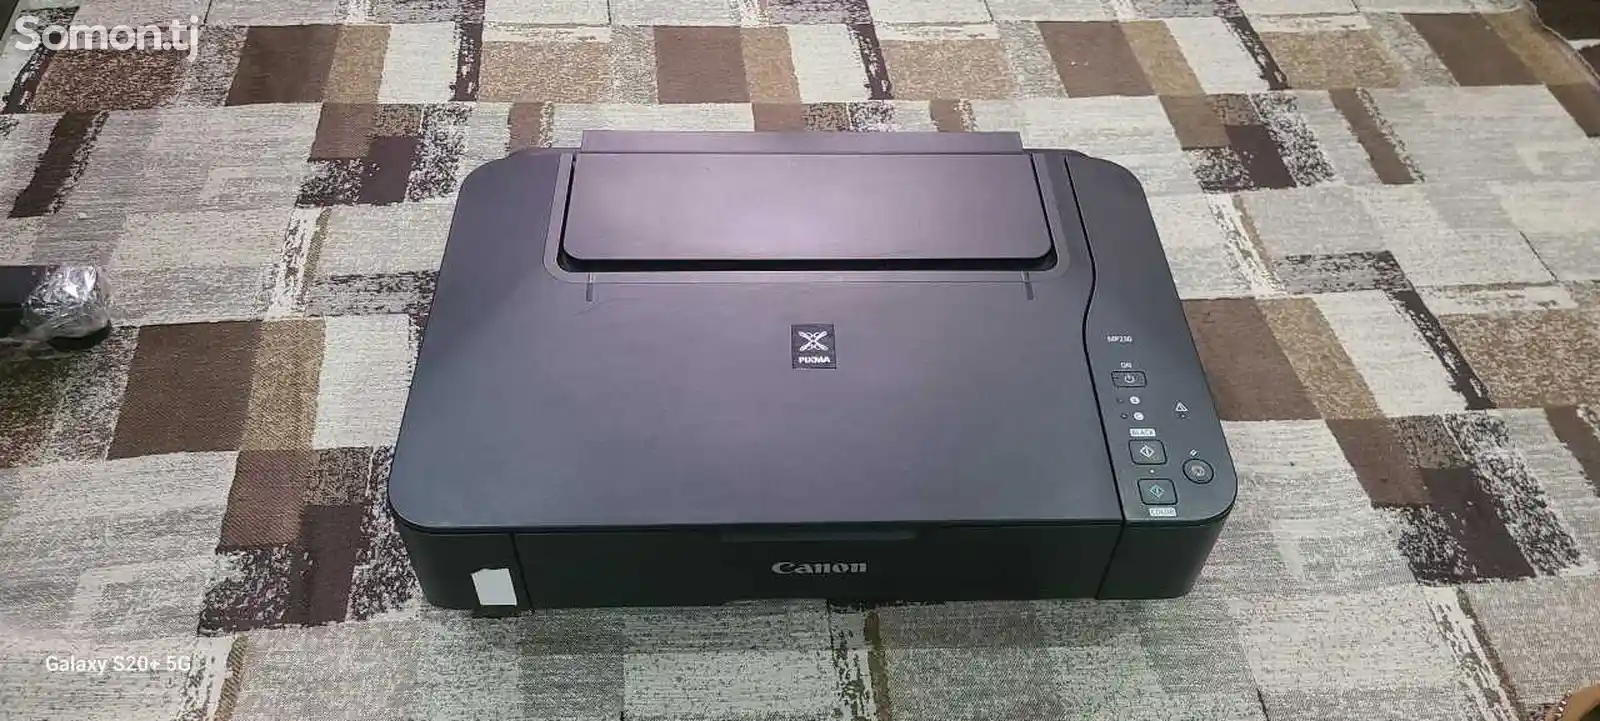 Принтер Canon Pixma-1